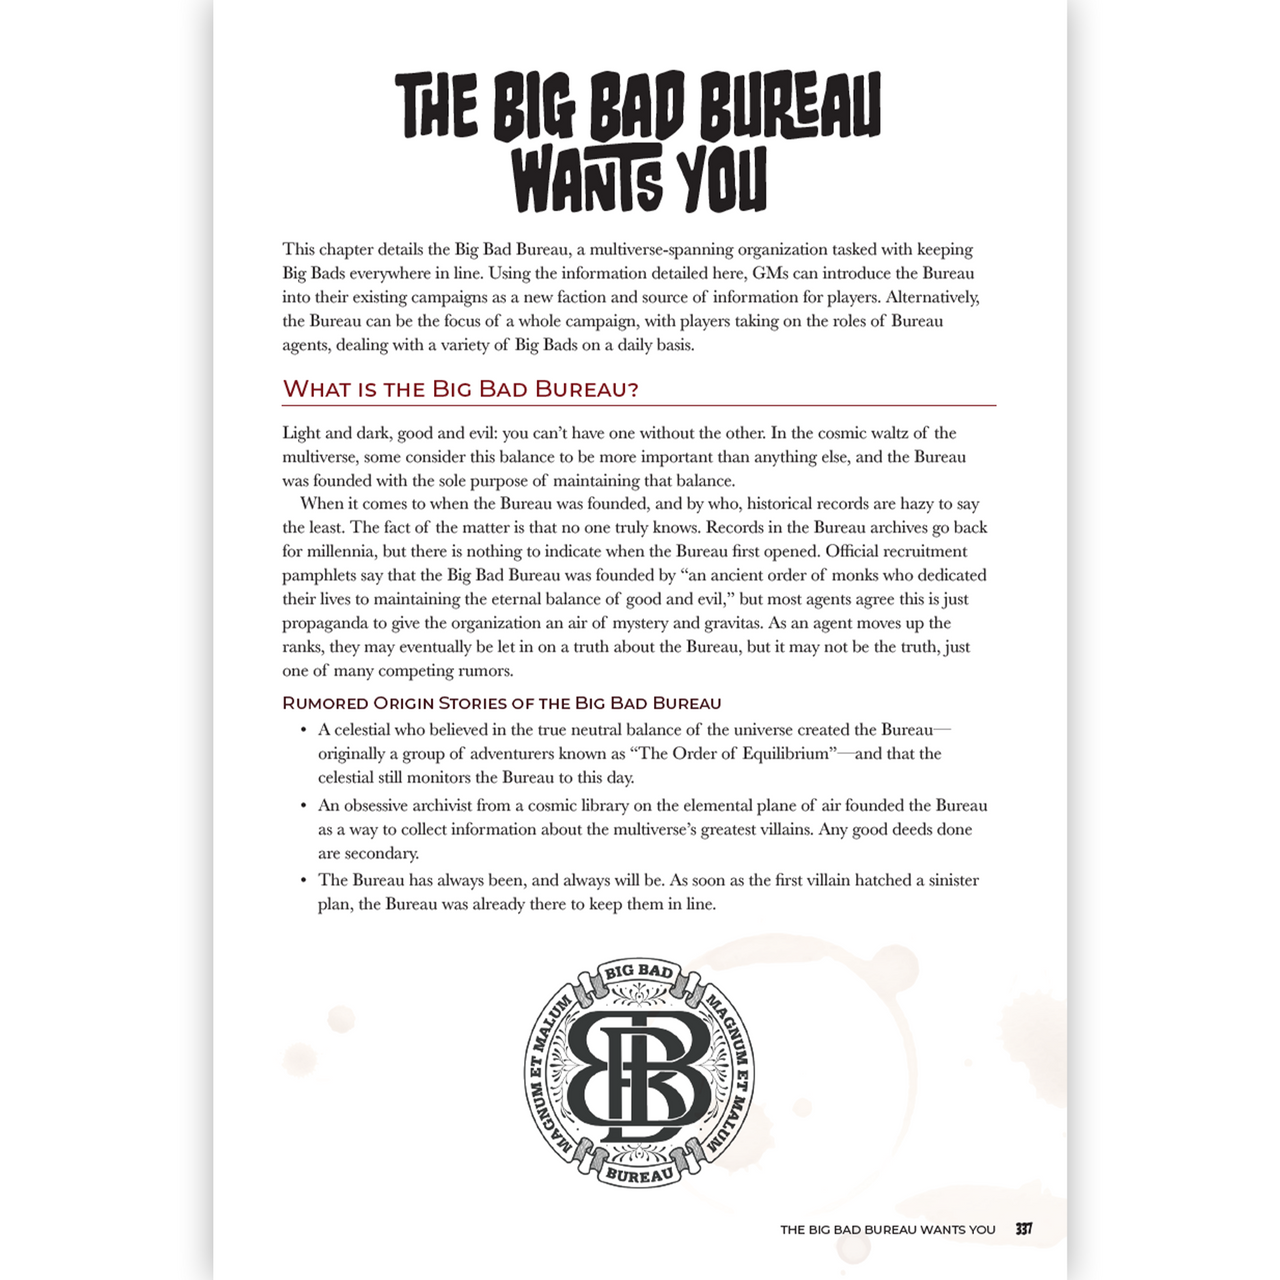 The Big Book of Big Bads (PDF)